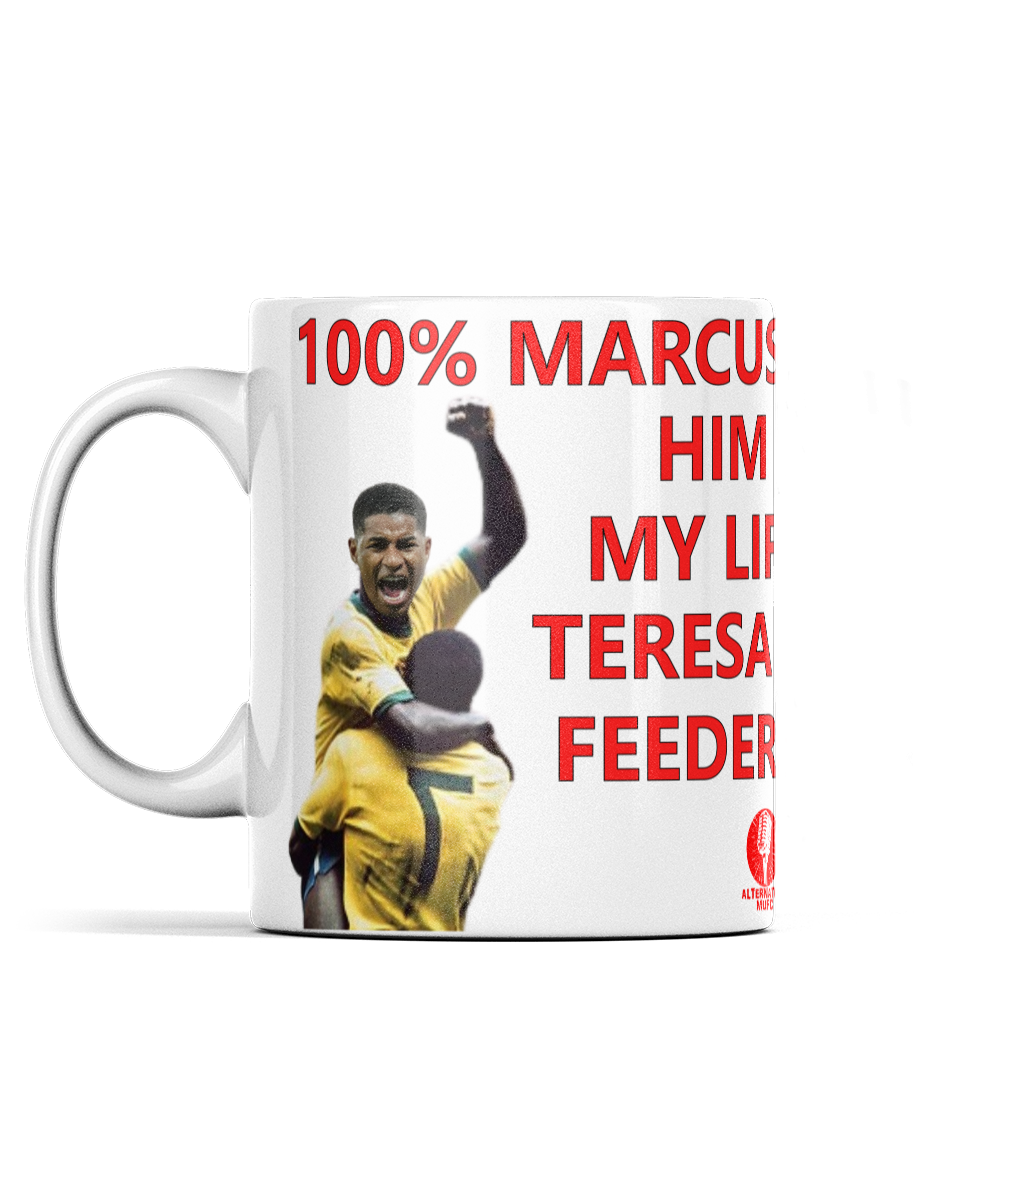 Marcus MBE Pele - Mug